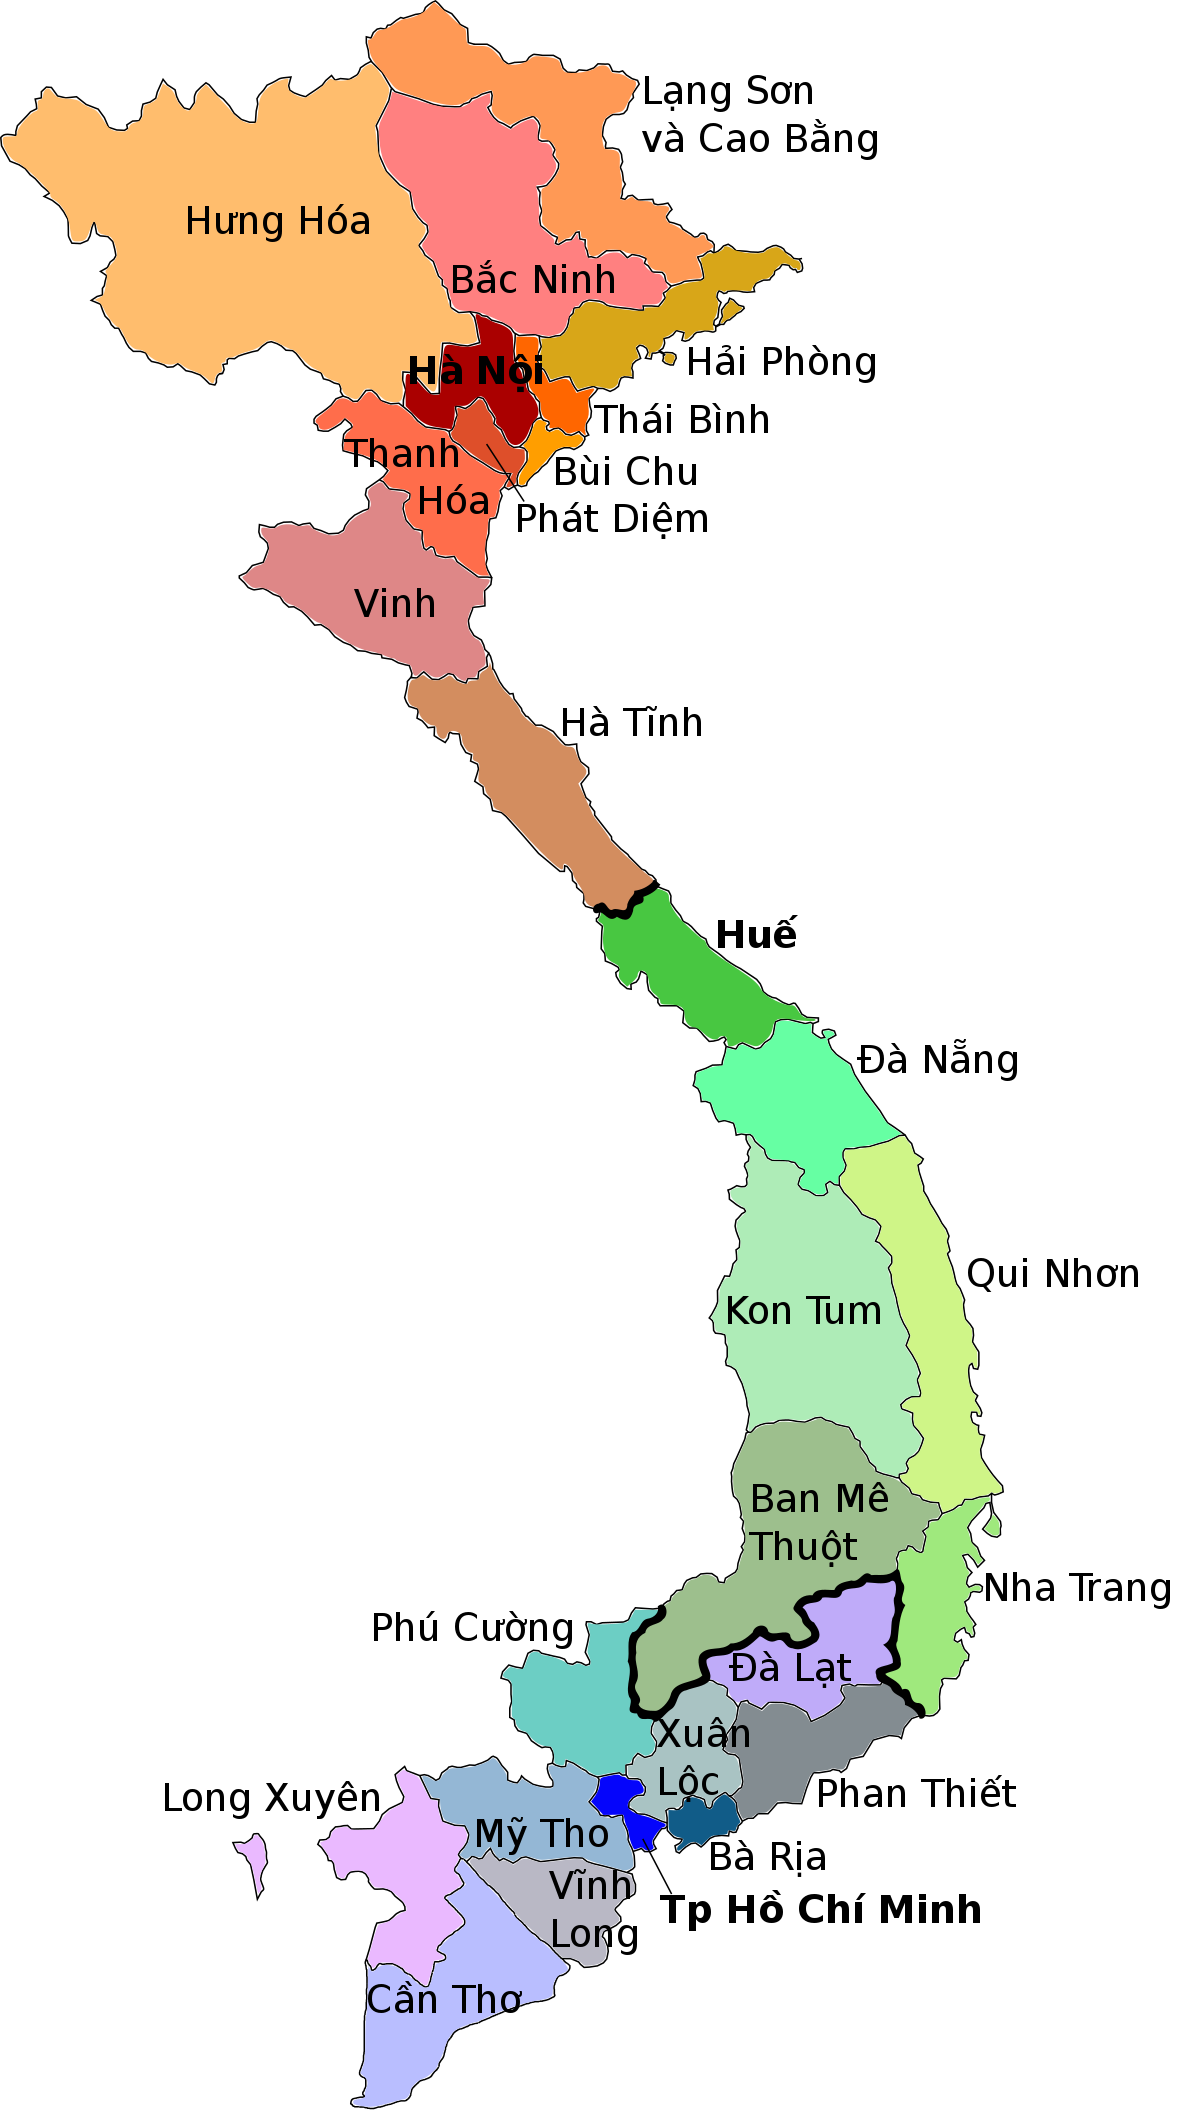 Với bản đồ giáo phận Công giáo Việt Nam, bạn có thể tìm hiểu về các giáo xứ và giáo phận trên cả nước. Bản đồ được cập nhật mới nhất, giúp bạn nắm rõ thông tin về địa lý, lịch sử và văn hóa tôn giáo tại từng vùng miền.